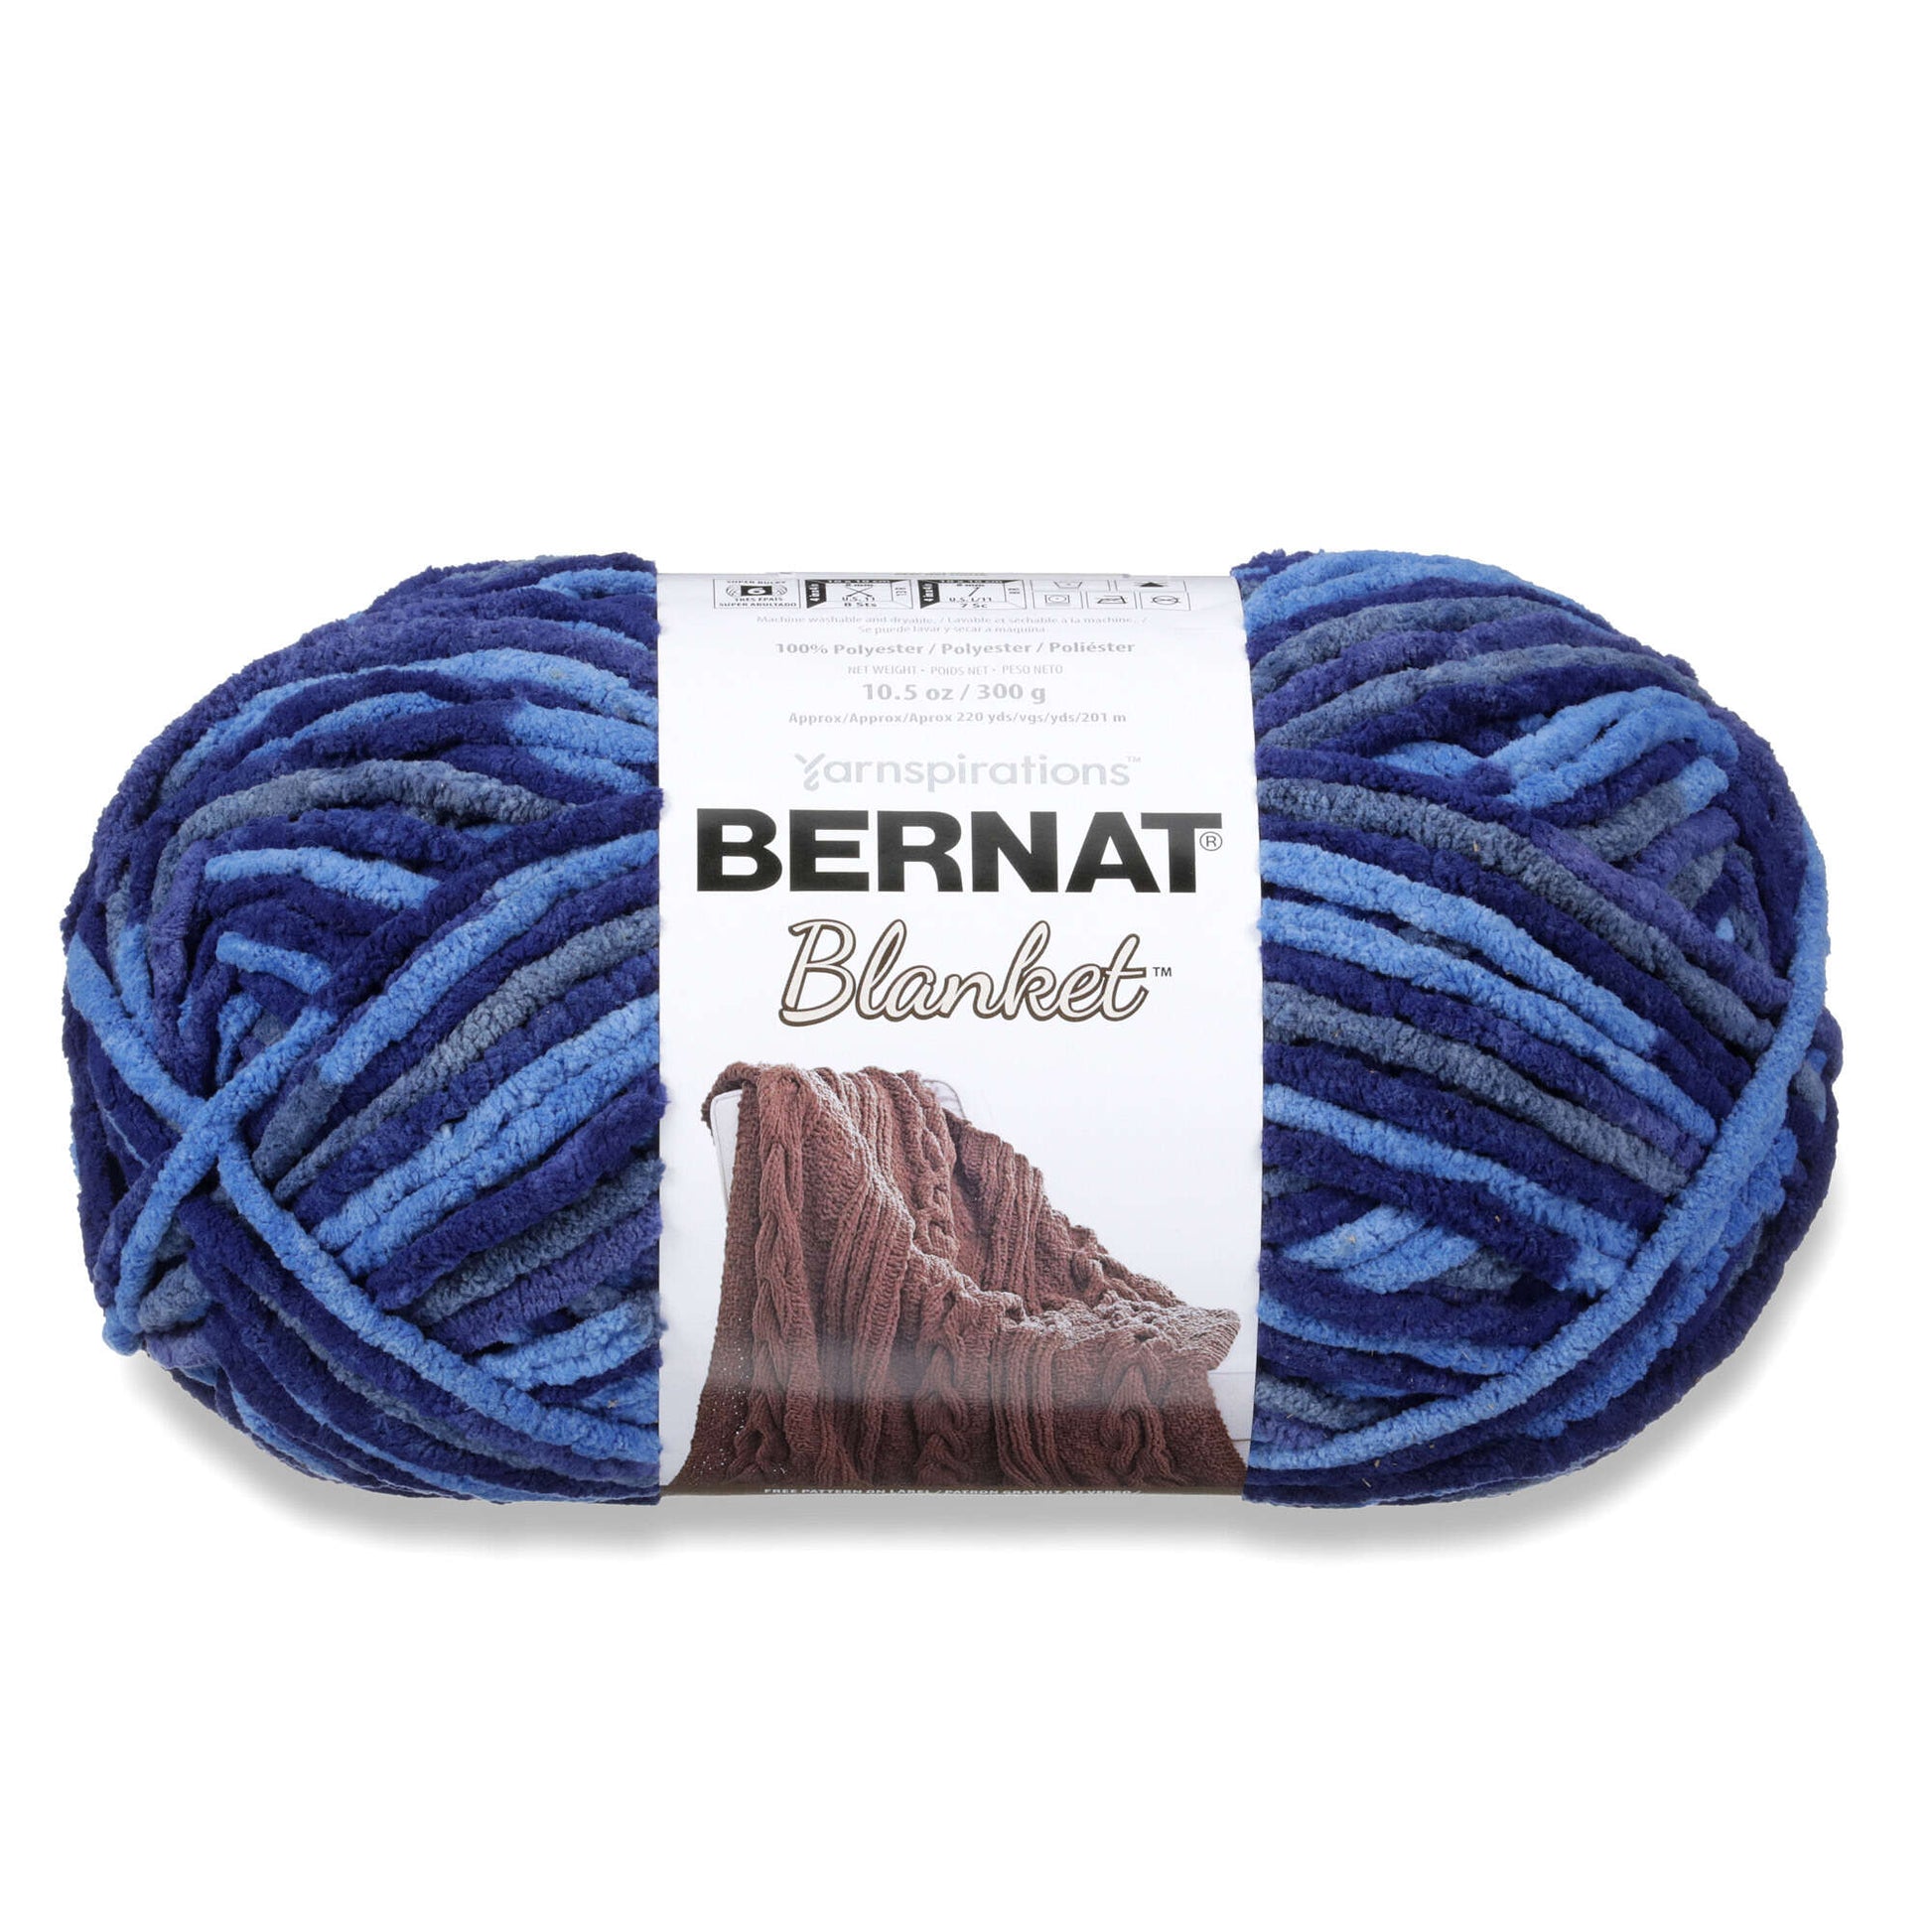 Bernat Blanket Yarn 3 Skeins, 2 Oceanside, 1 Teal 